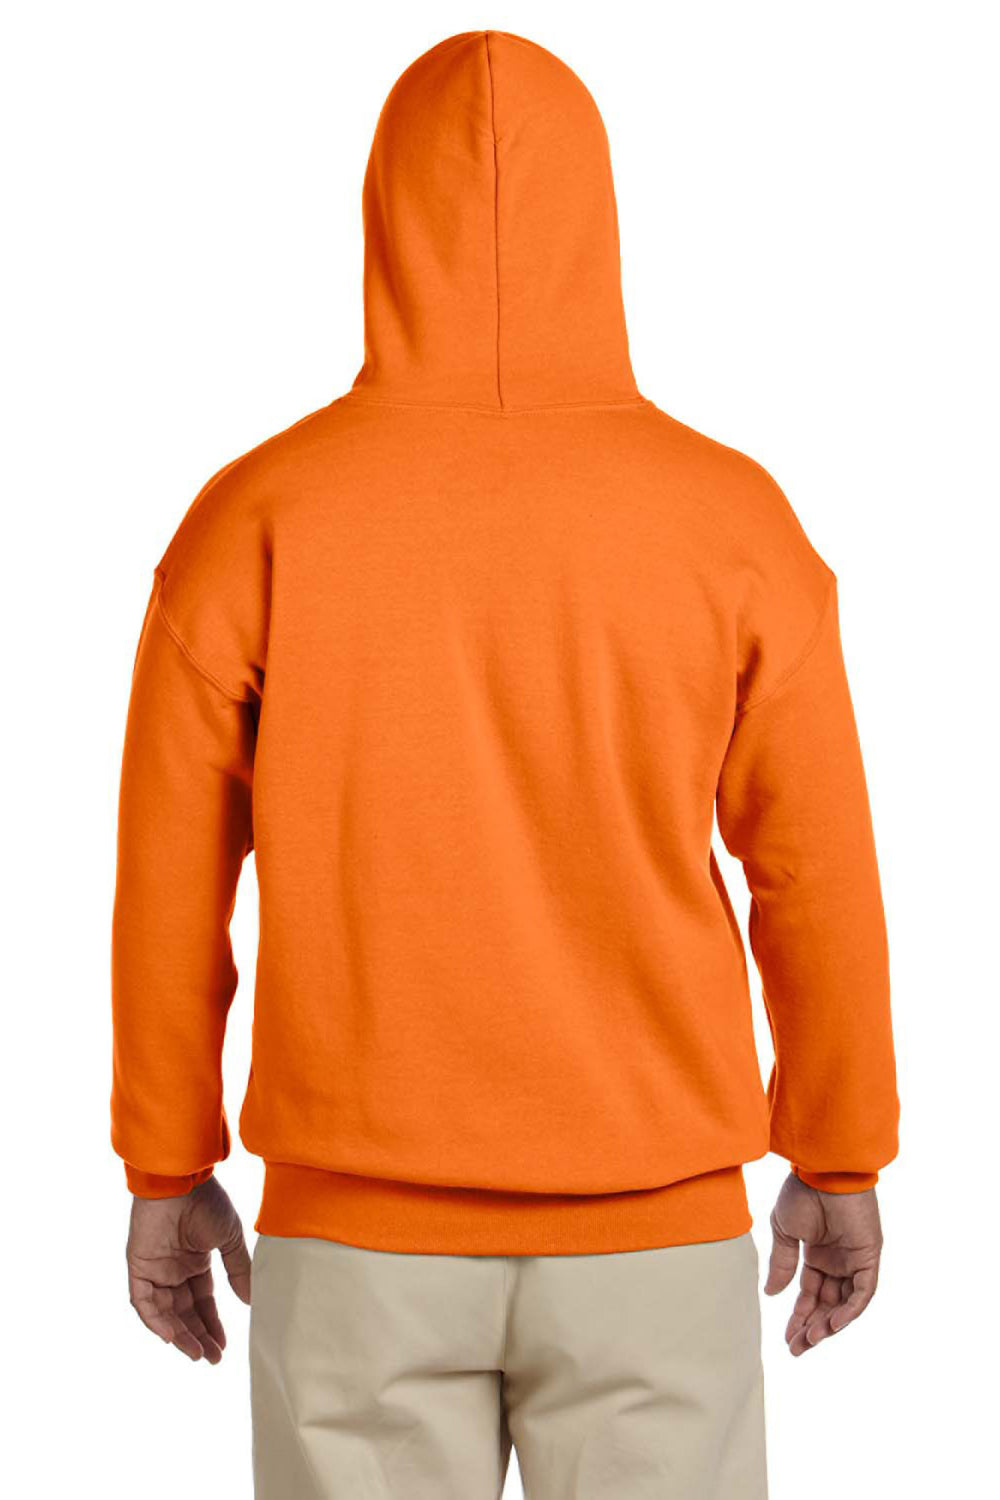 Gildan G185 Mens Hooded Sweatshirt Hoodie Safety Orange Back